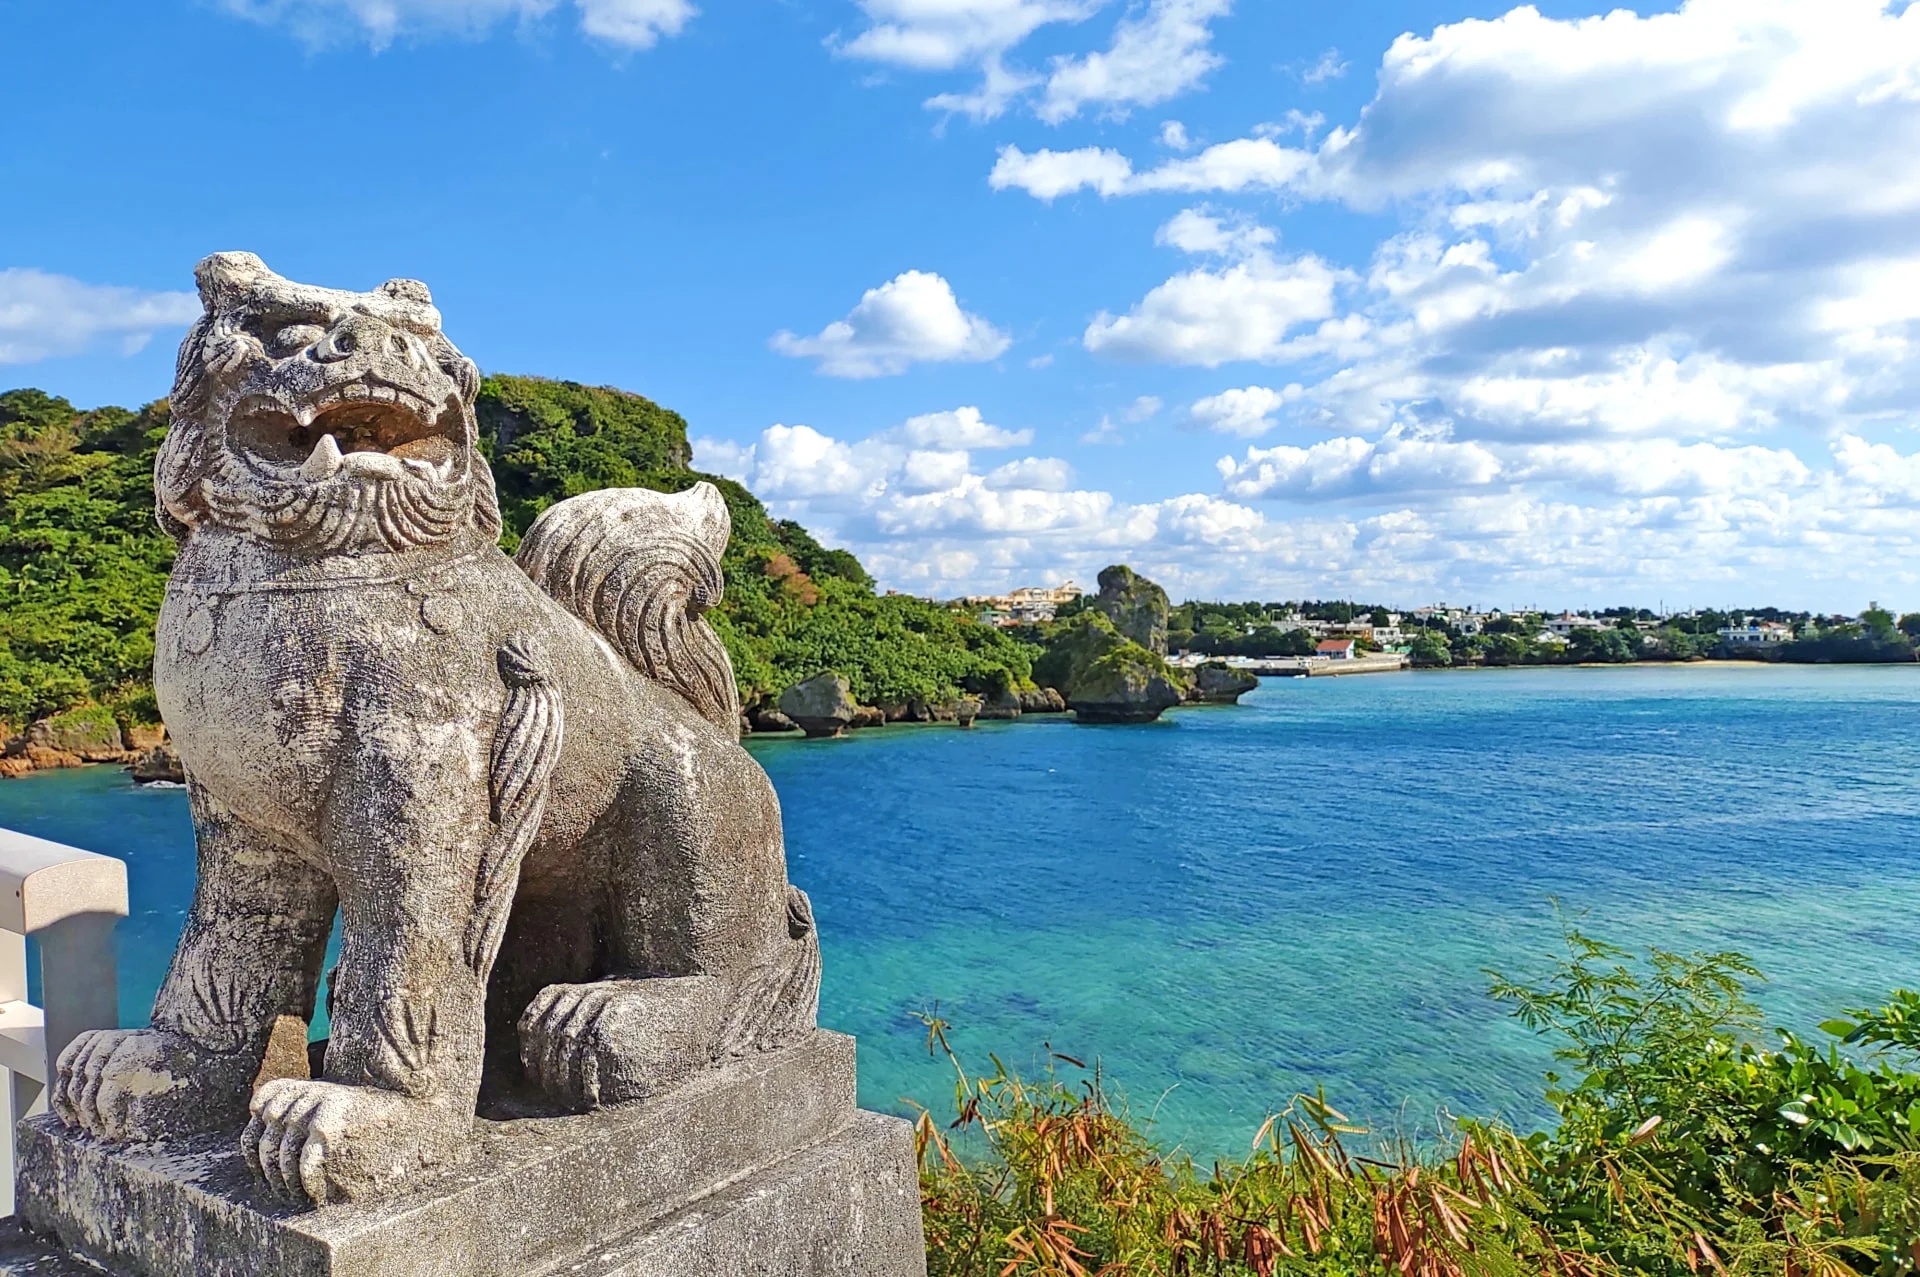 เมืองโอกินาวา
(Okinawa)